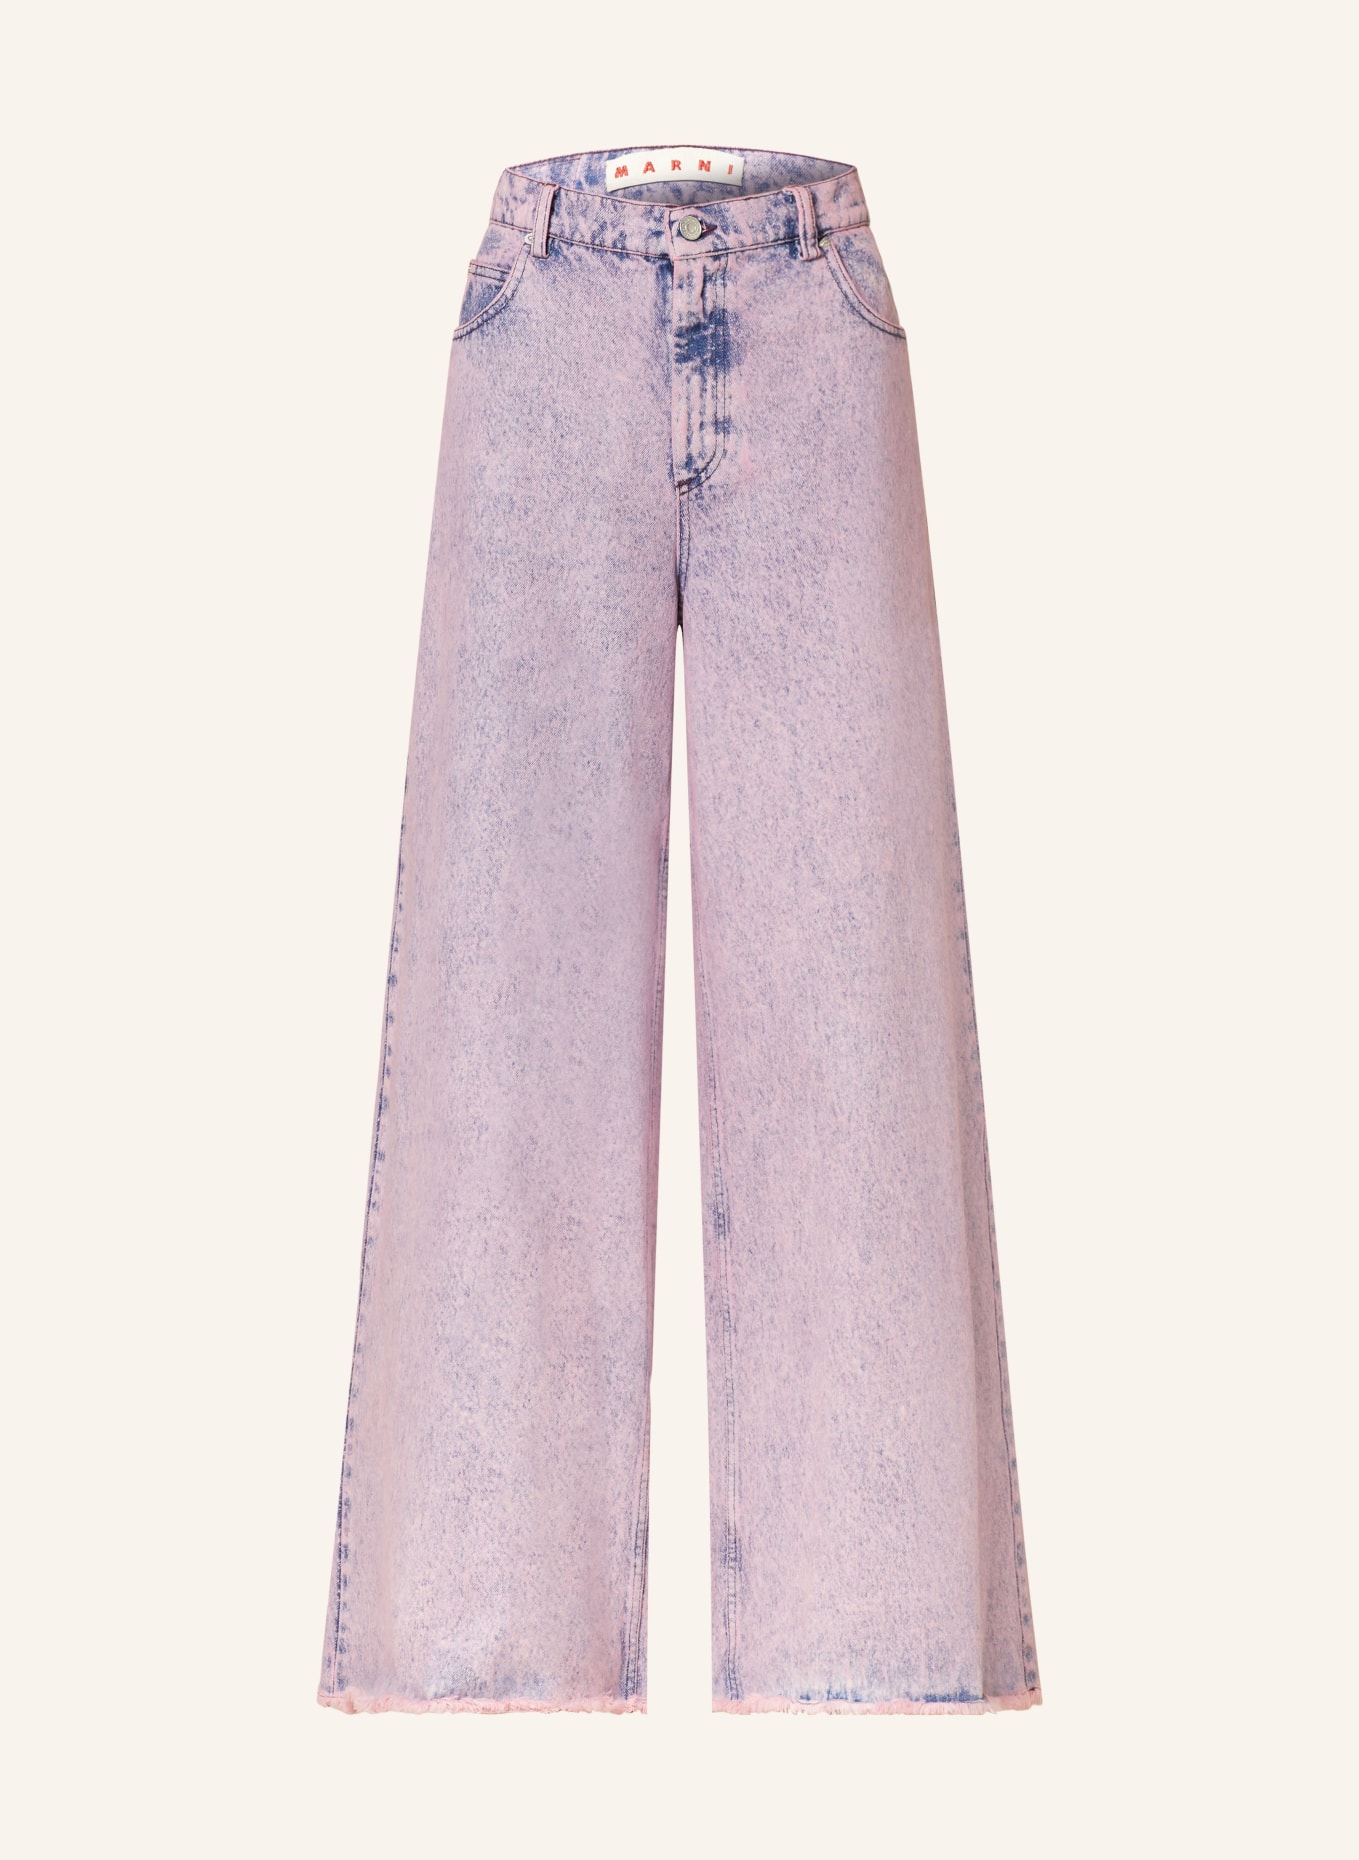 MARNI Flared Jeans, Farbe: MBC13 PINK GUMMY (Bild 1)